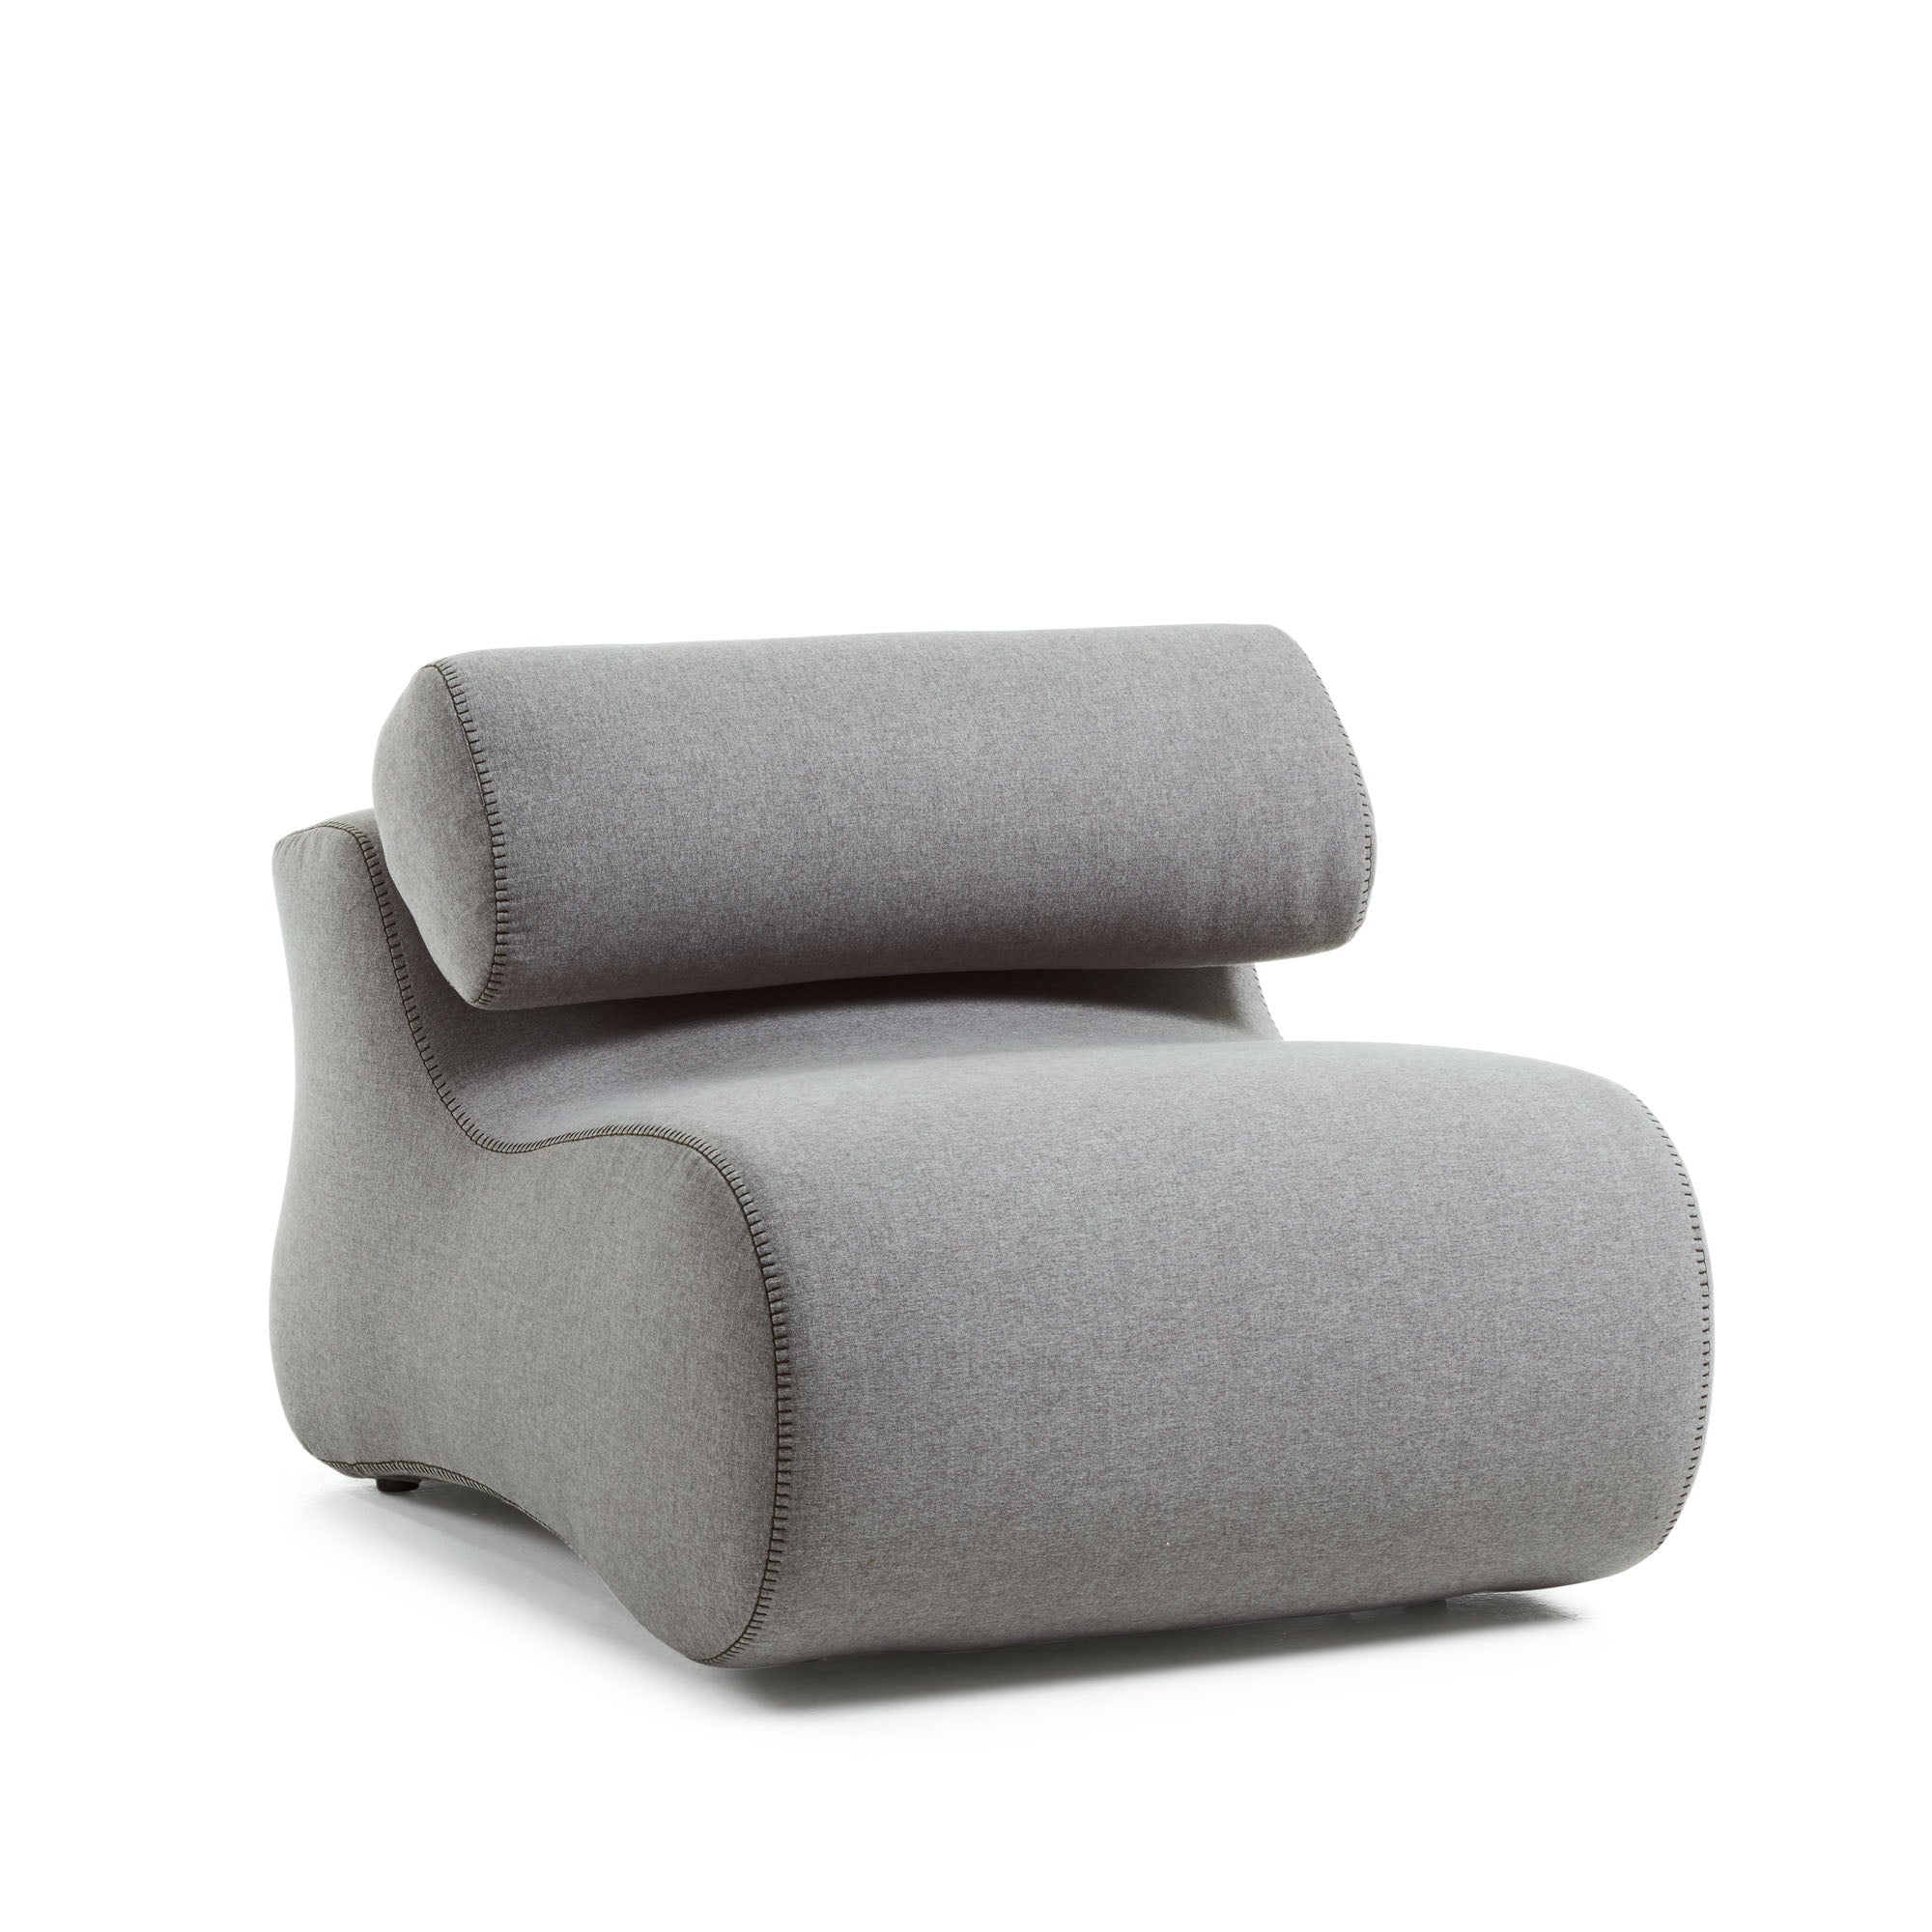 Club armchair in grey